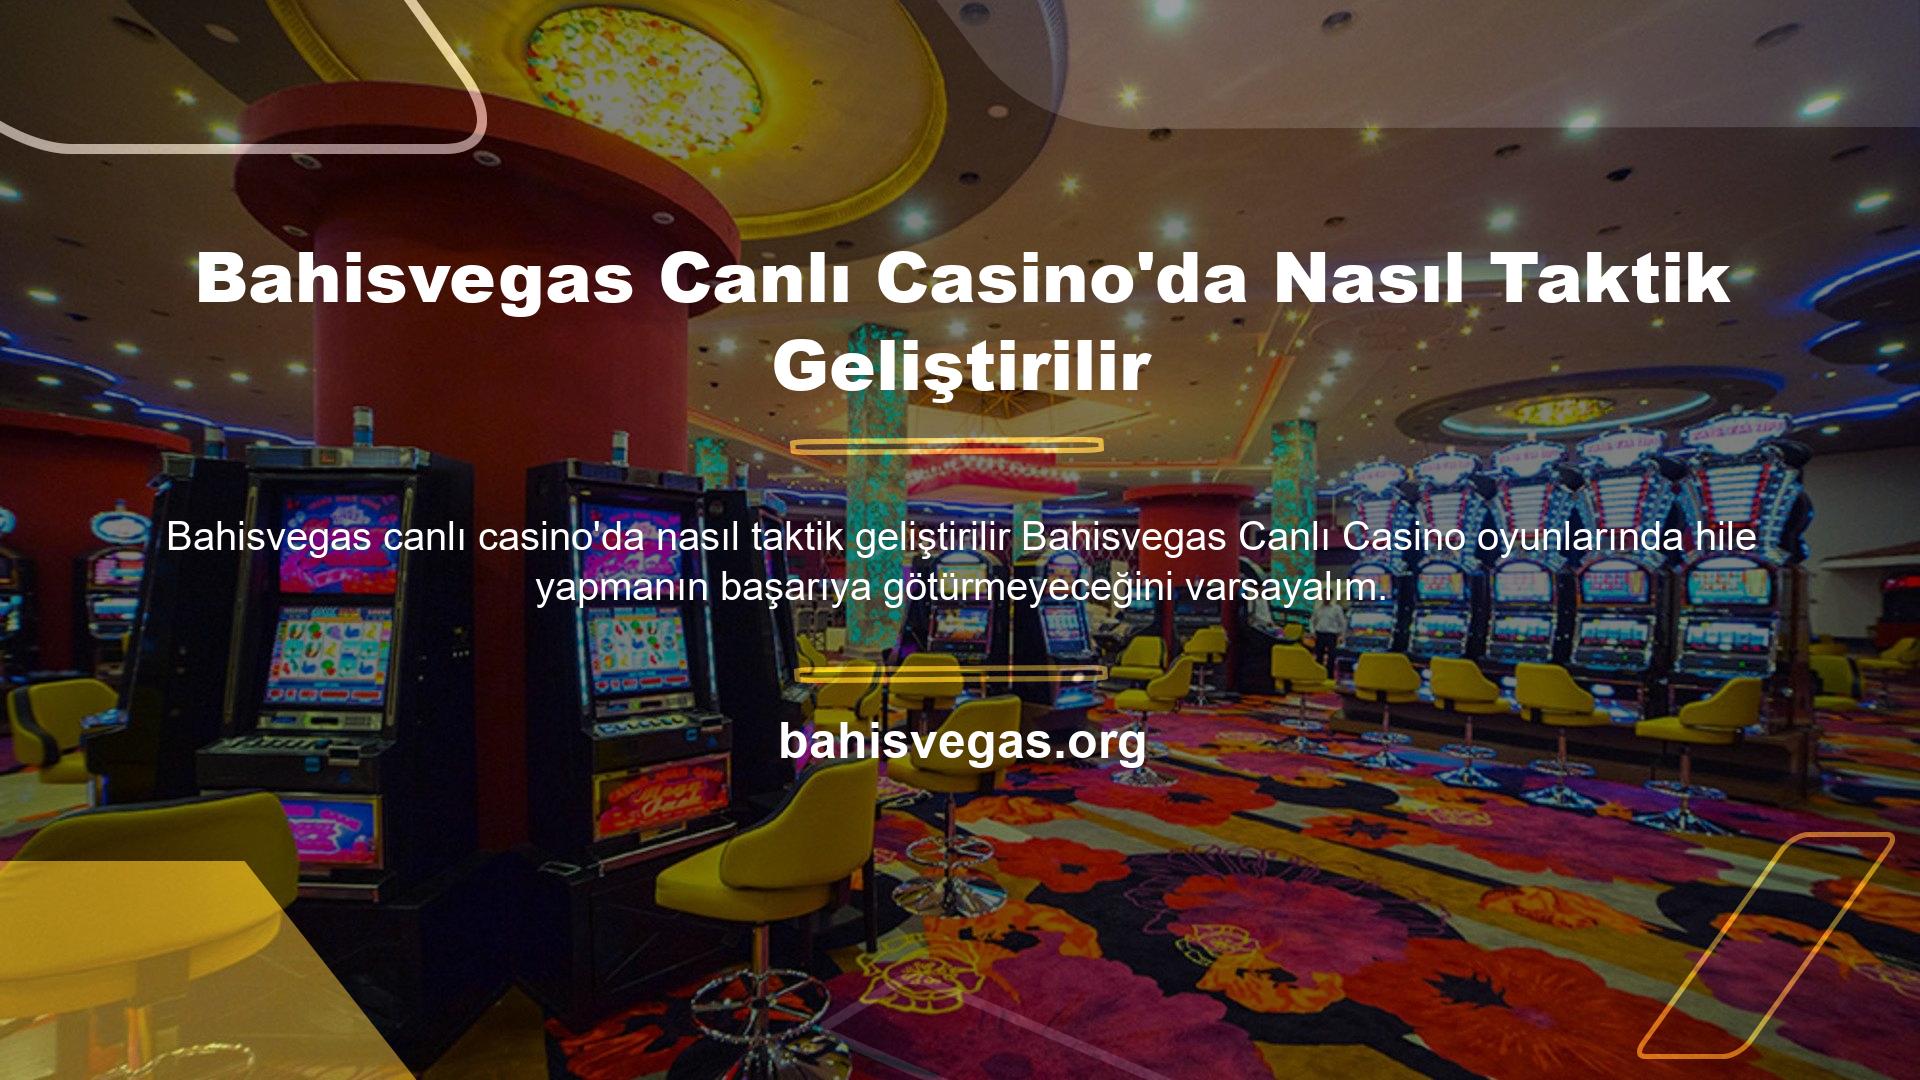 Bahisvegas Canlı Casino'da Nasıl Taktik Geliştirilir